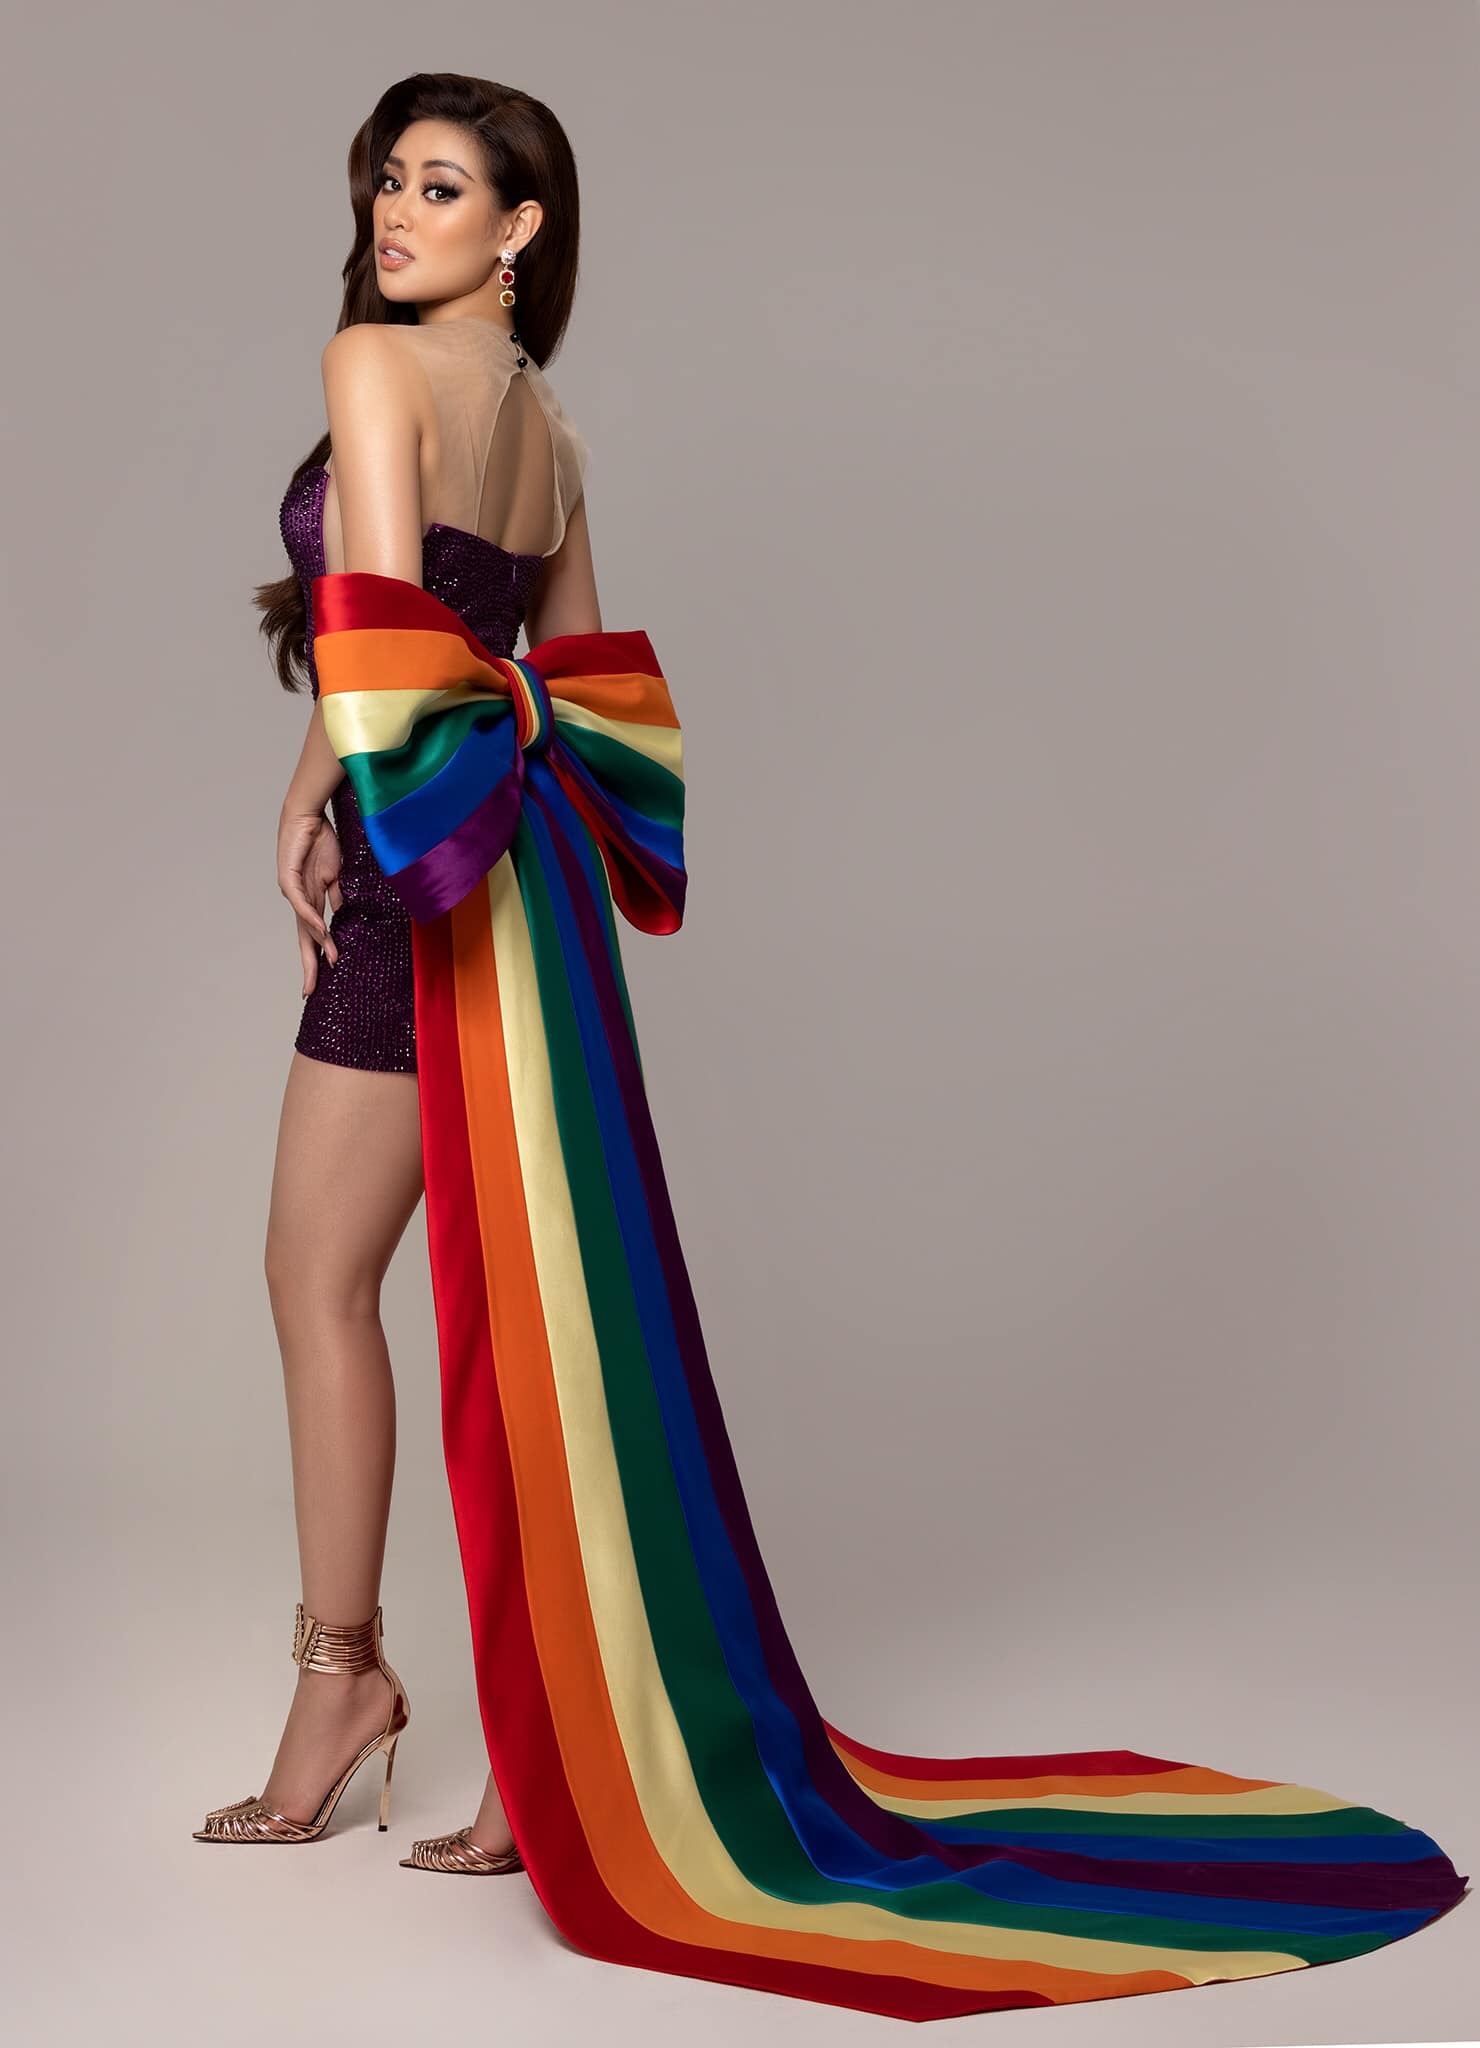 Mẫu váy áo cờ lục sắc LGBT được thiết kế và tạo ra để phản ánh sự chấp nhận và yêu thương cho sự đa dạng của cộng đồng LGBT. Hãy xem qua hình ảnh và cảm nhận sự vui mừng và tự hào khi mặc trang phục này.